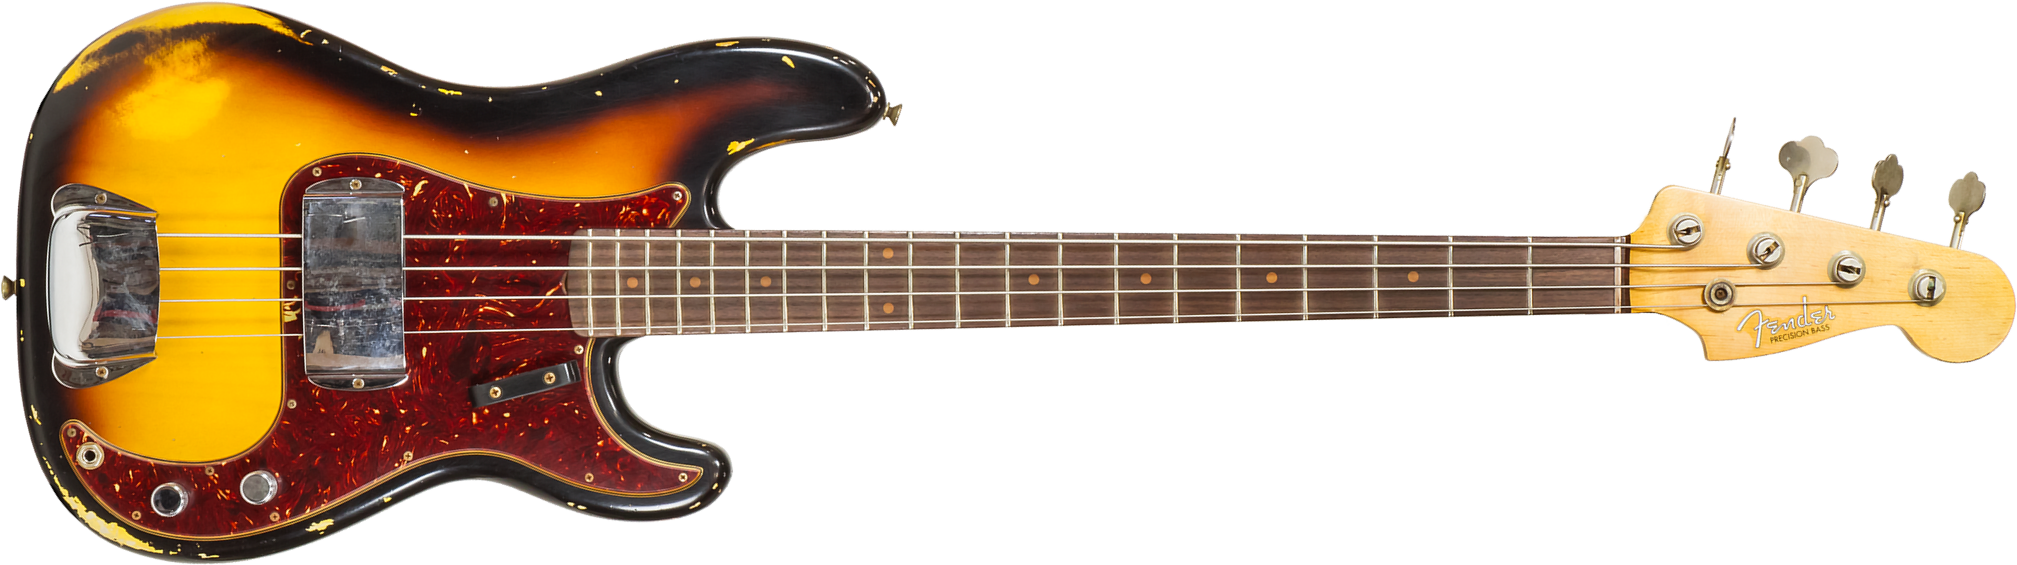 Fender Custom Shop Precision Bass 1963 Rw #cz560028 - Heavy Relic Aged 3-color Sunburst - Basse Électrique Solid Body - Main picture